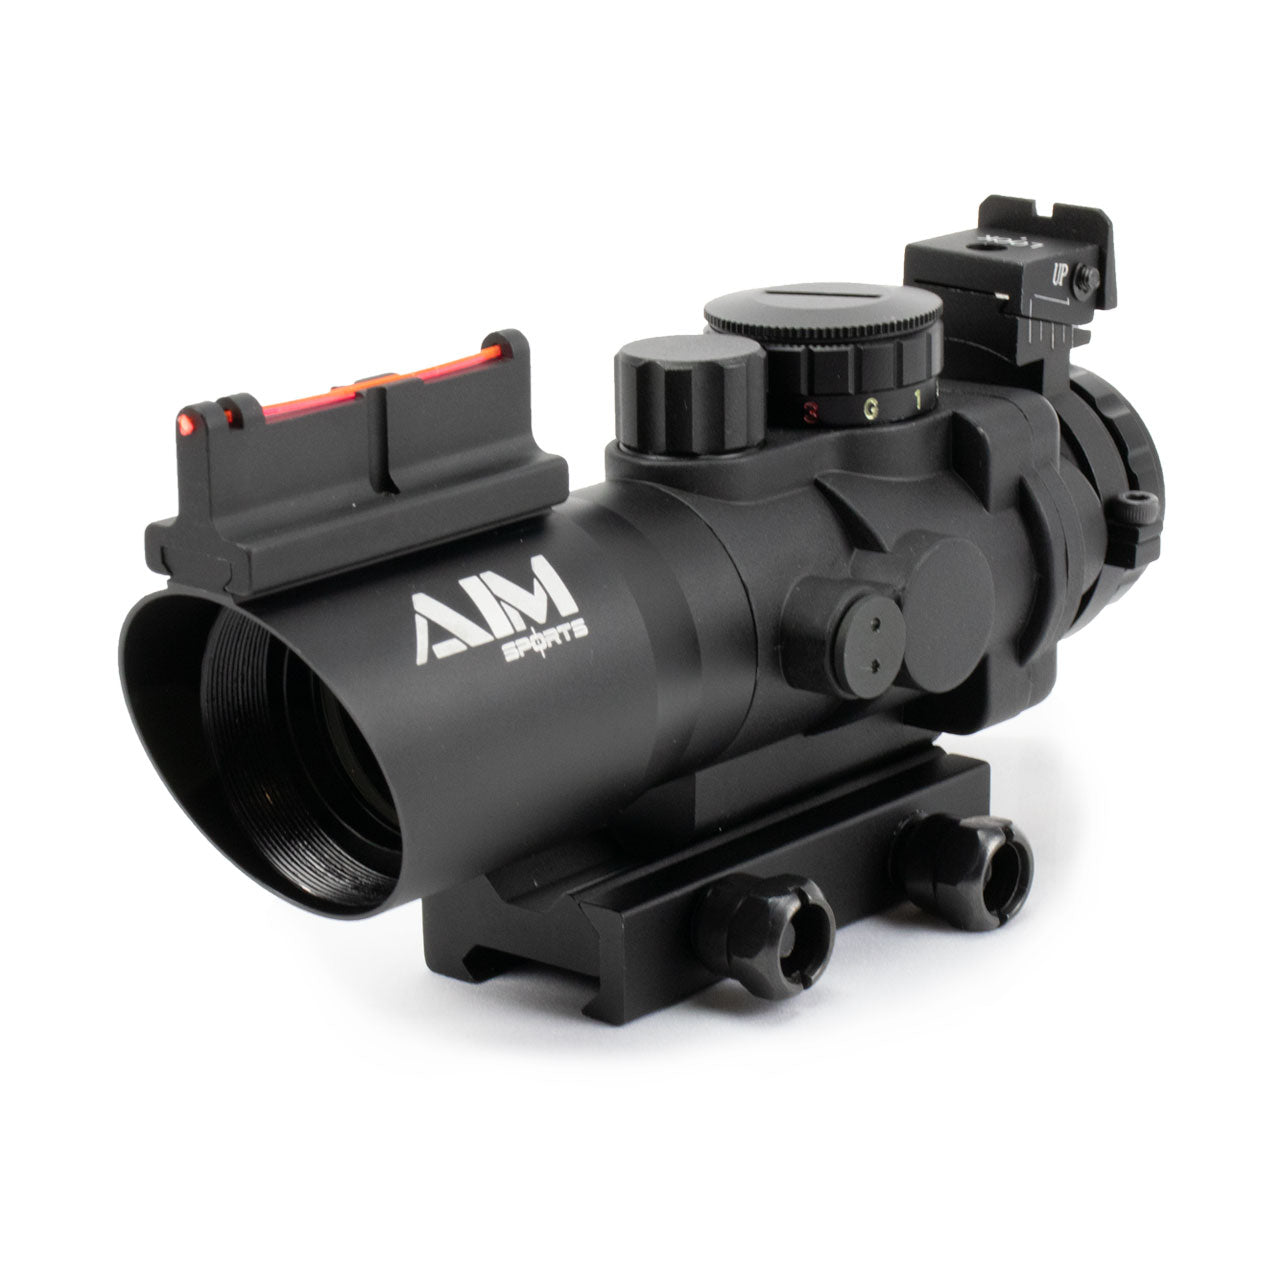 Aim Sports 4x32 Tri Illuminated Scope W/Fiber Optic Sight